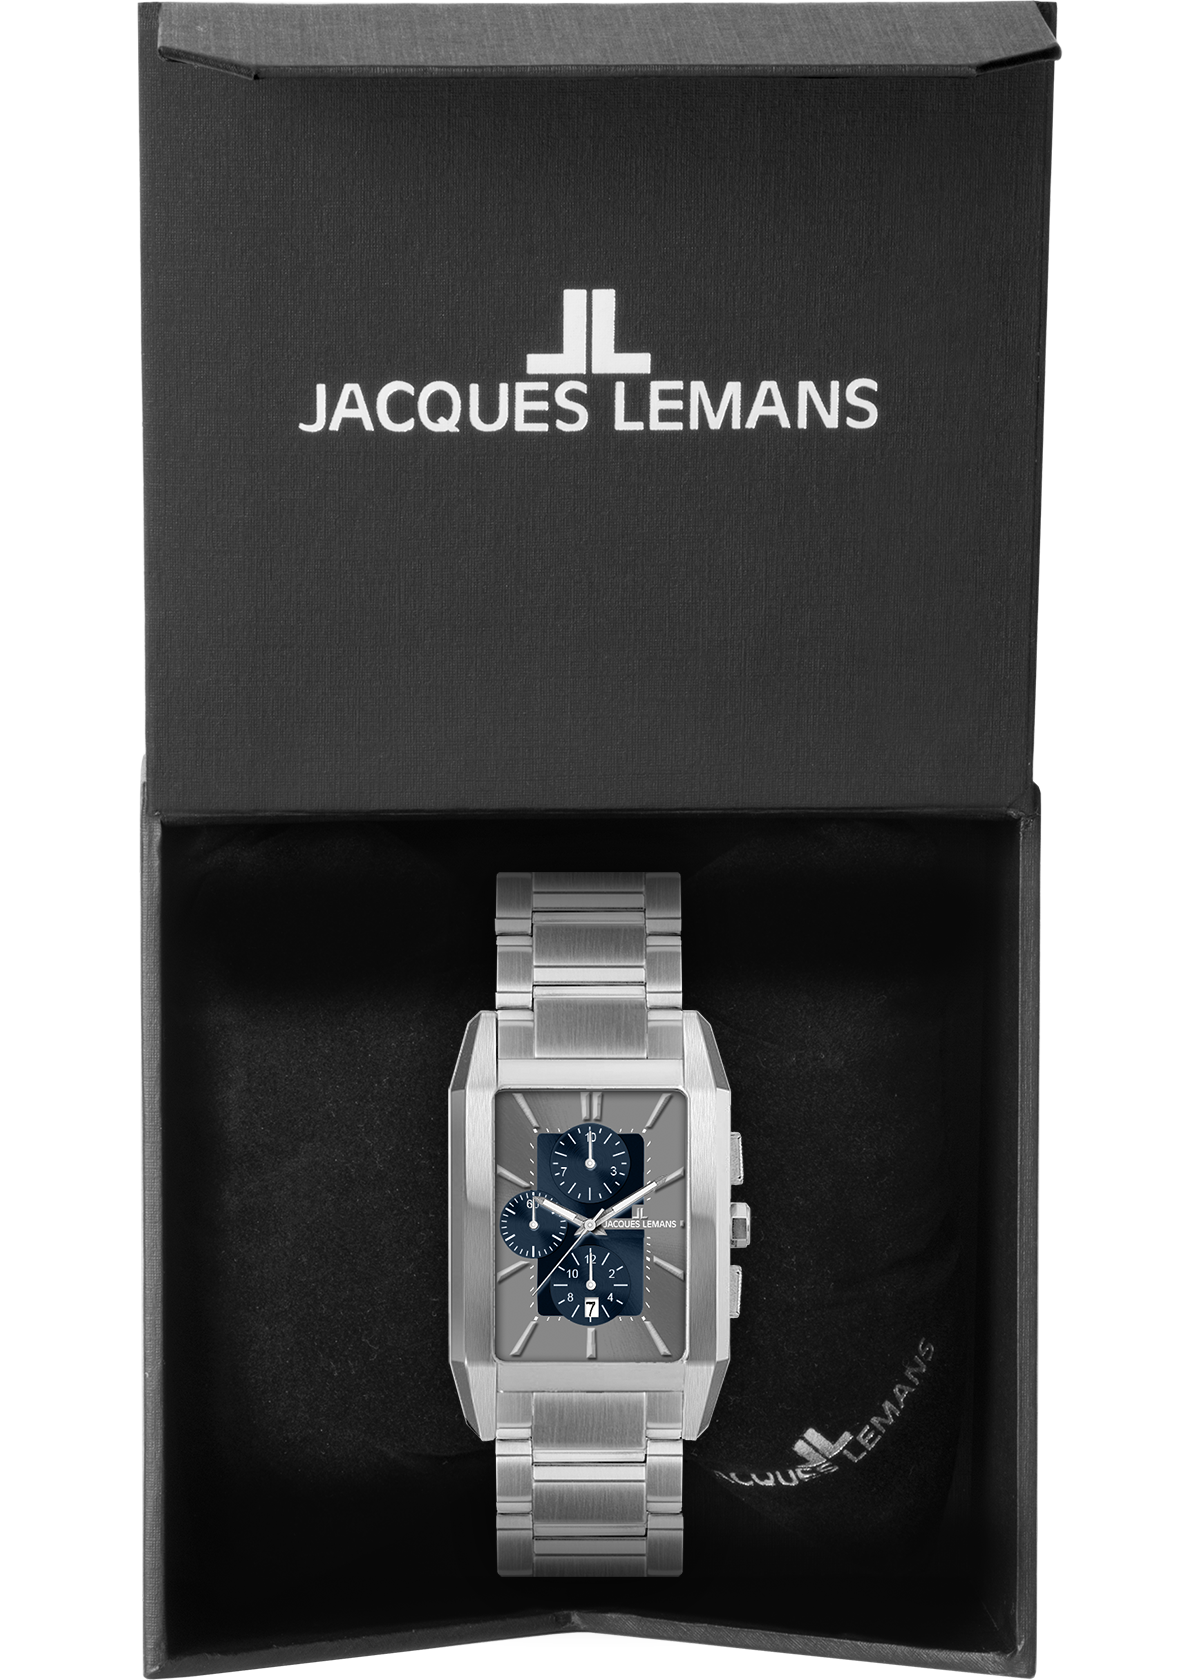 Chronograph Lemans Jacques ♕ bei »1-2161K«